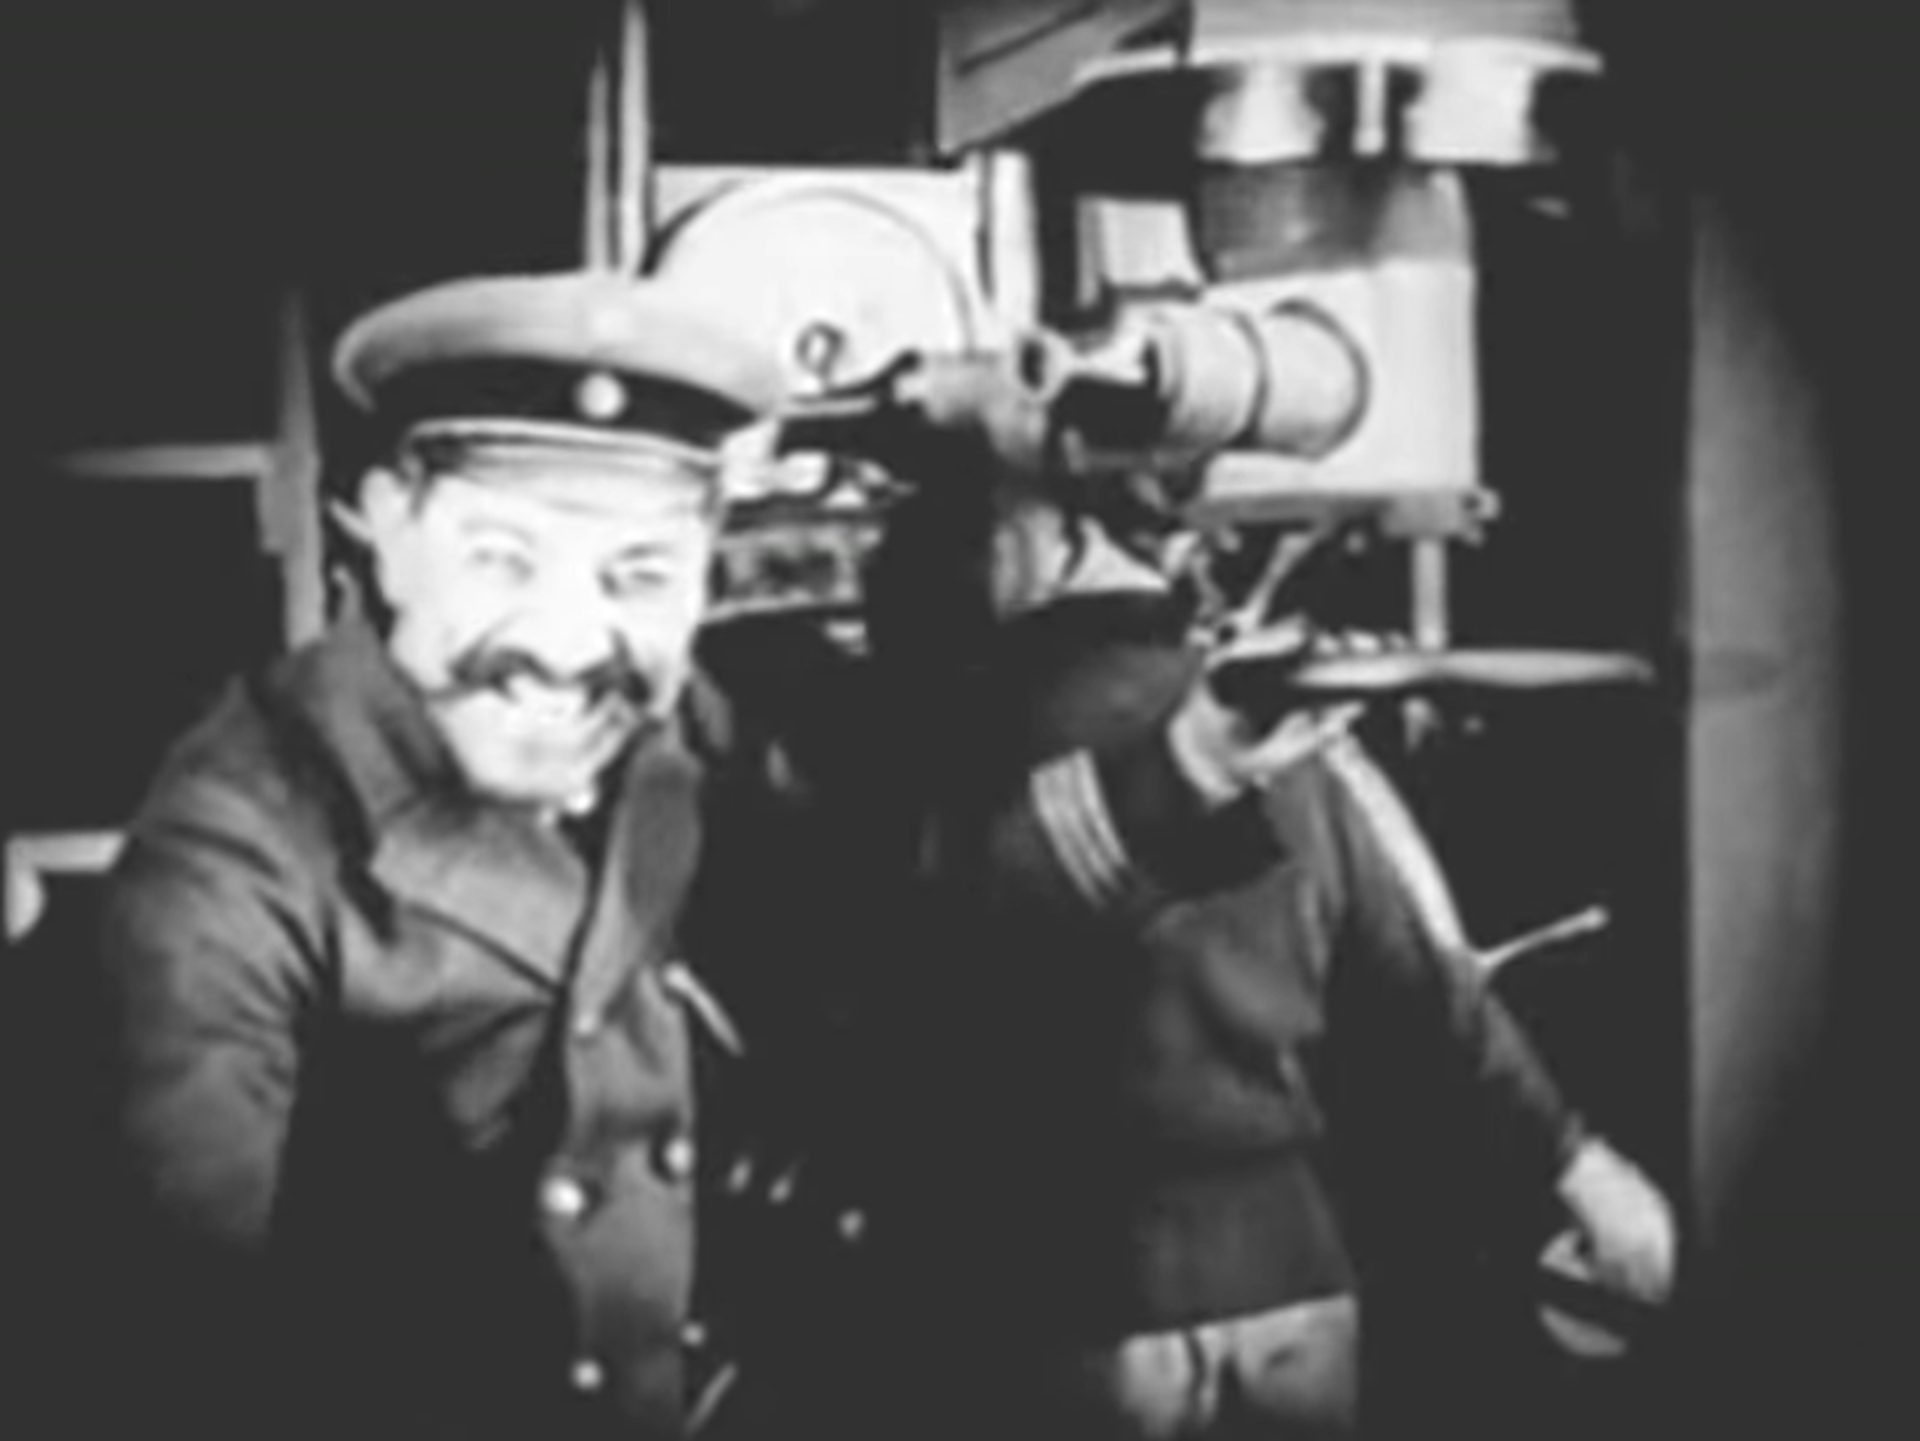 Schwarz-Weiß-Szene mit deutschem U-Boot-Kapitän, der mit einem fratzenhaften Grinsen am Periskop steht und zur Kamera blickt.